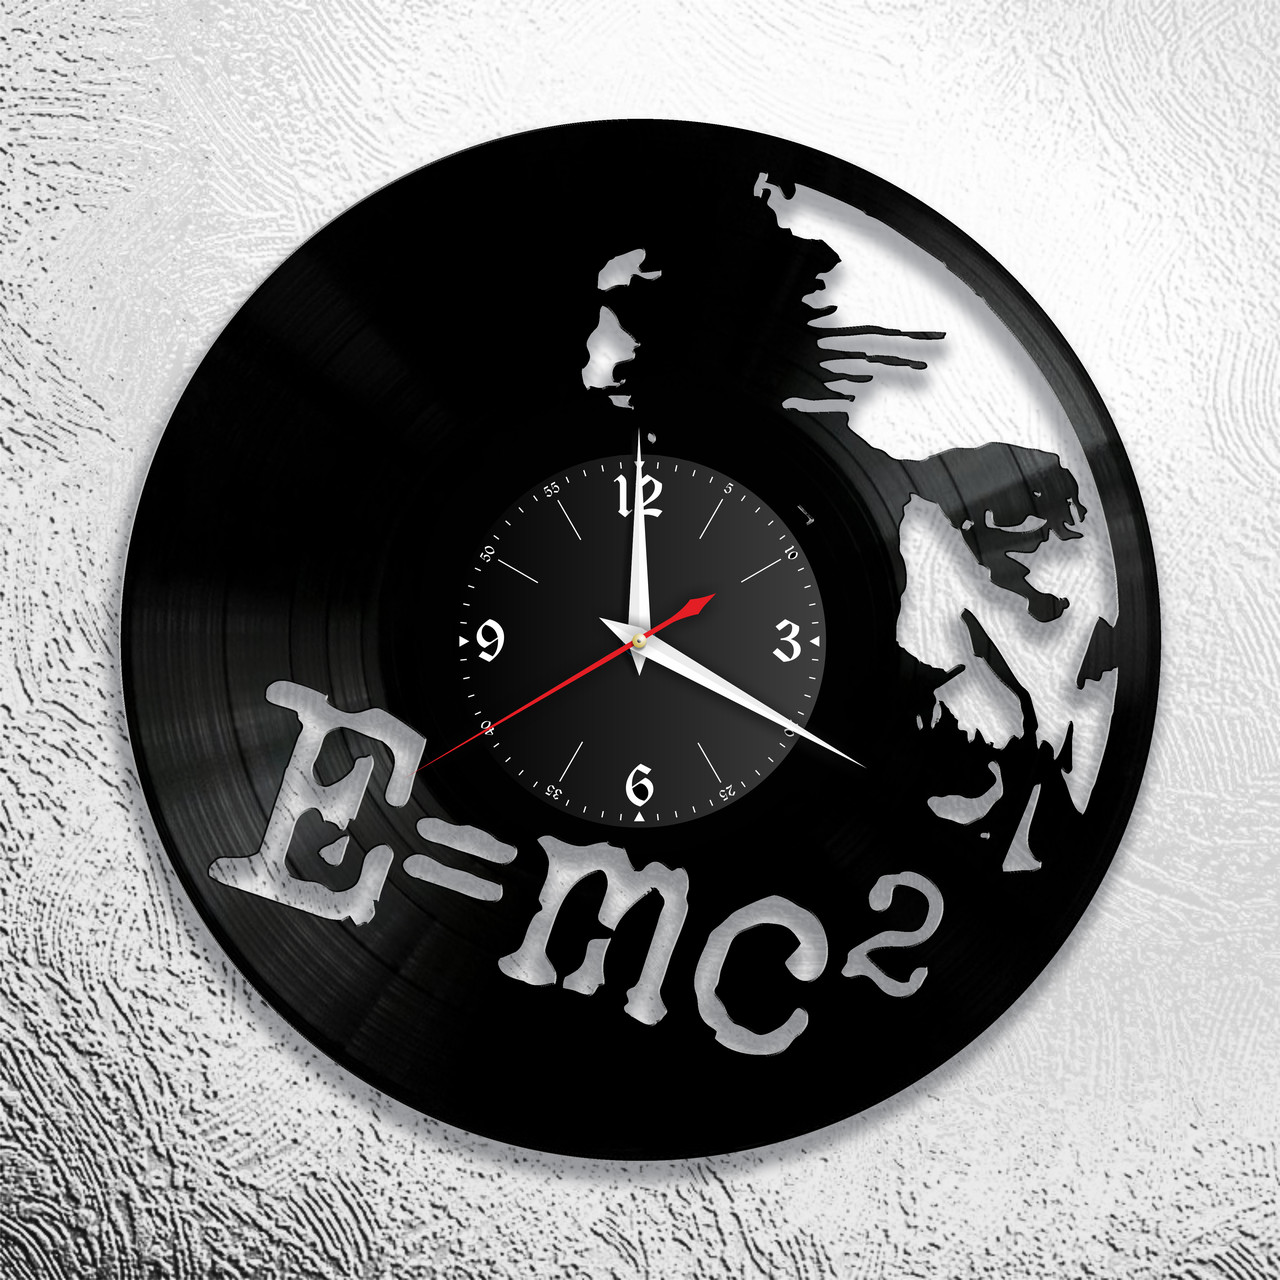 Оригинальные часы из виниловых пластинок "Эйнштейн" версия 1, фото 1